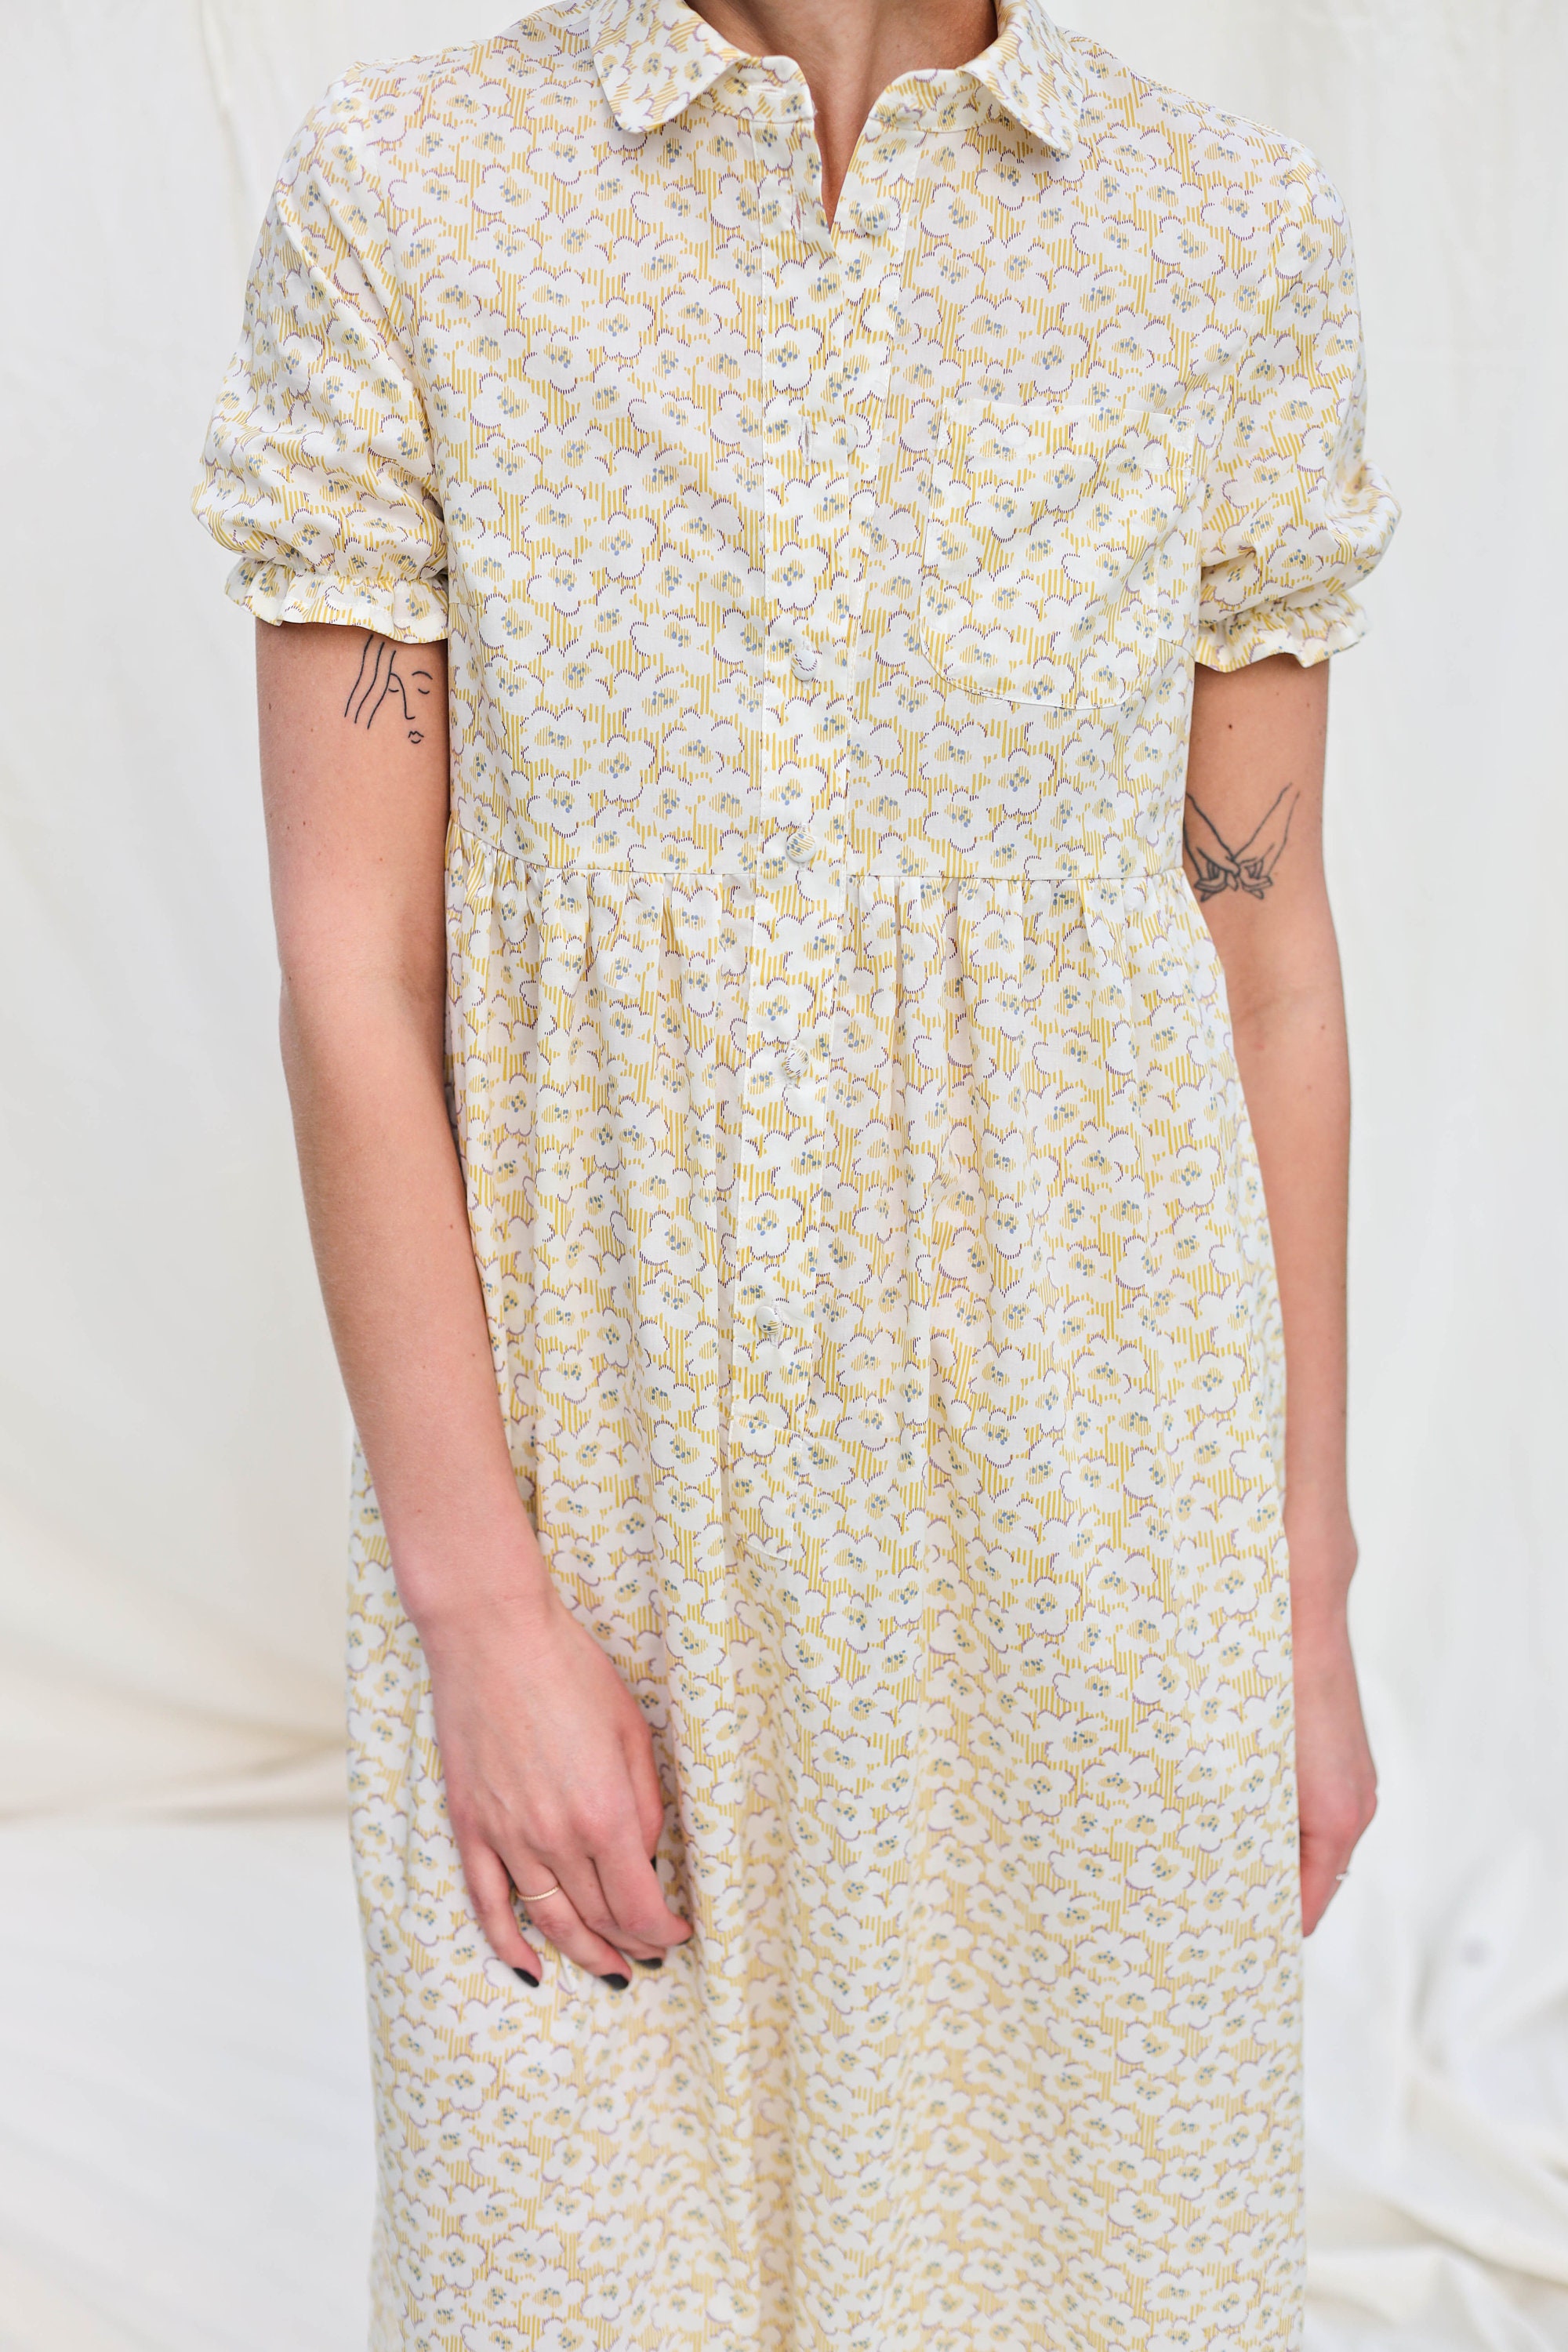 Flowy silky cotton summer dress DAZE / OFFON Clothing | Etsy